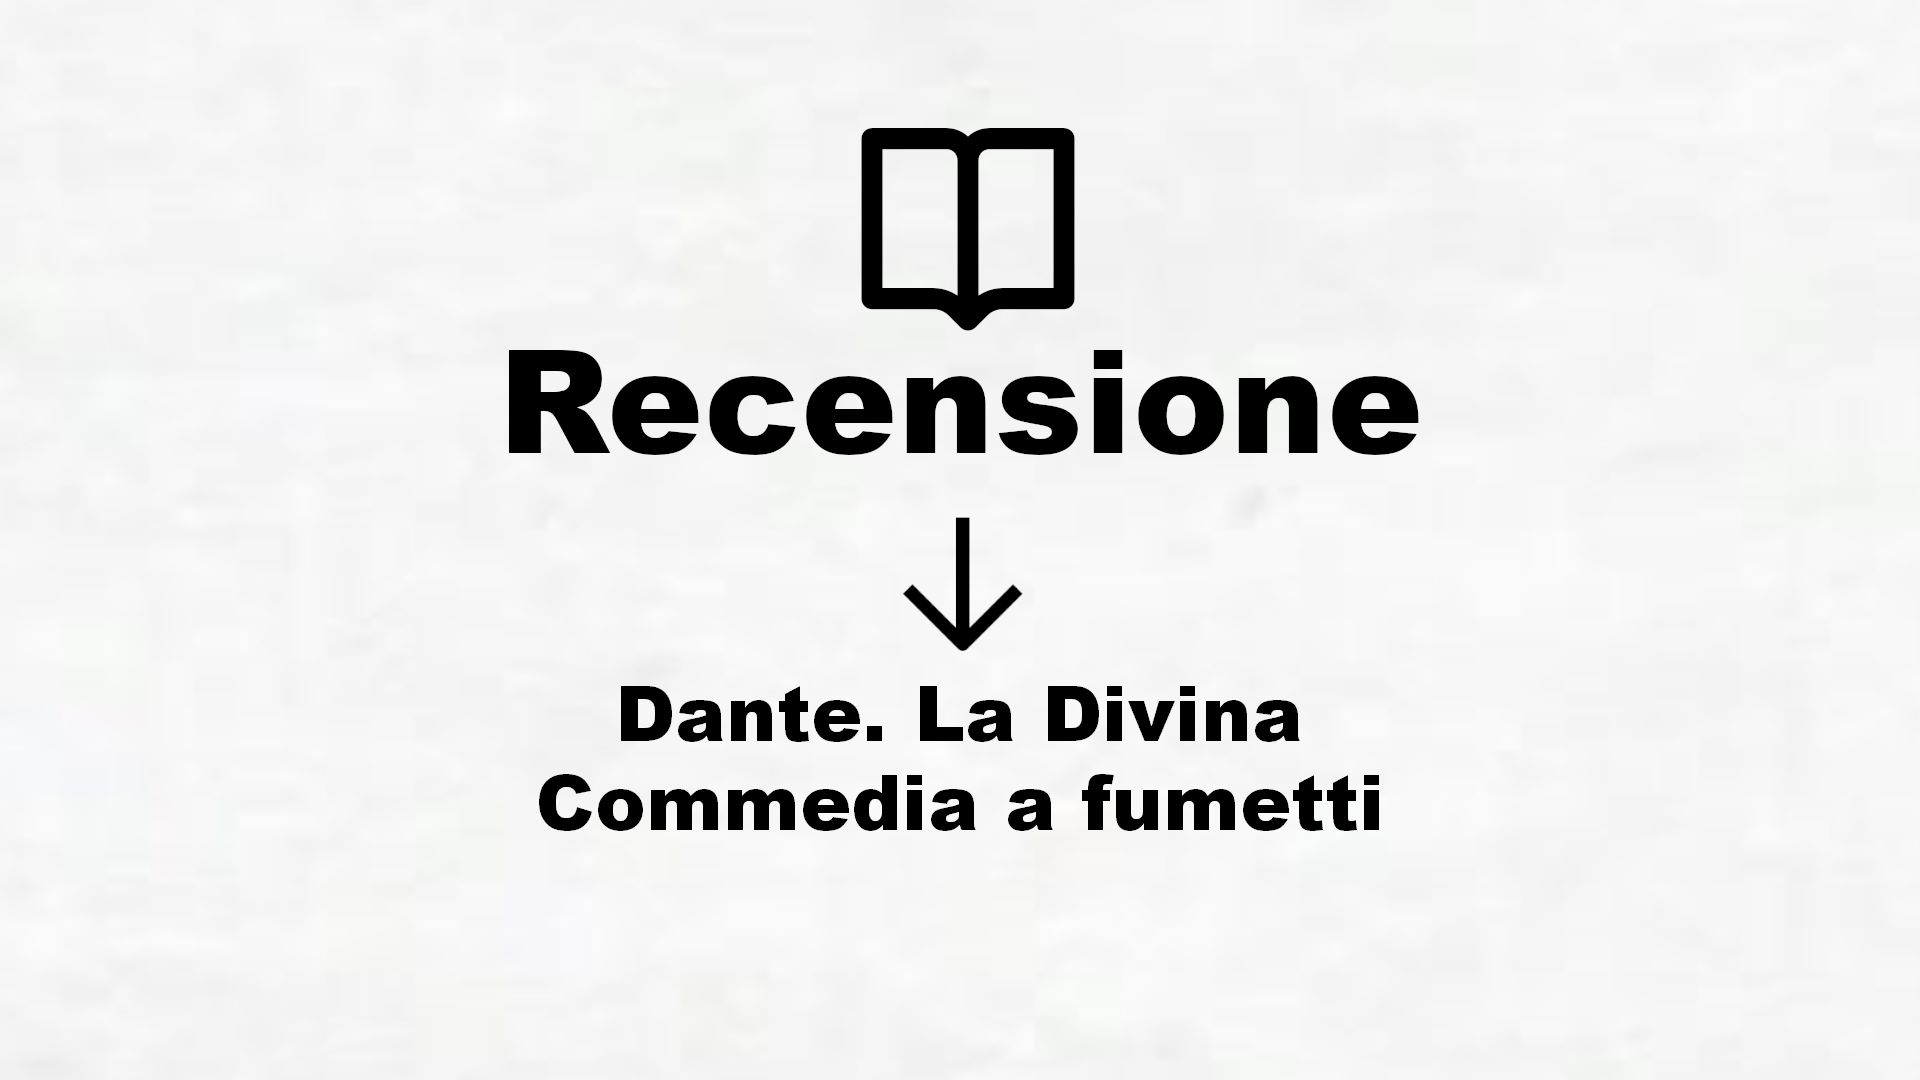 Dante. La Divina Commedia a fumetti – Recensione Libro